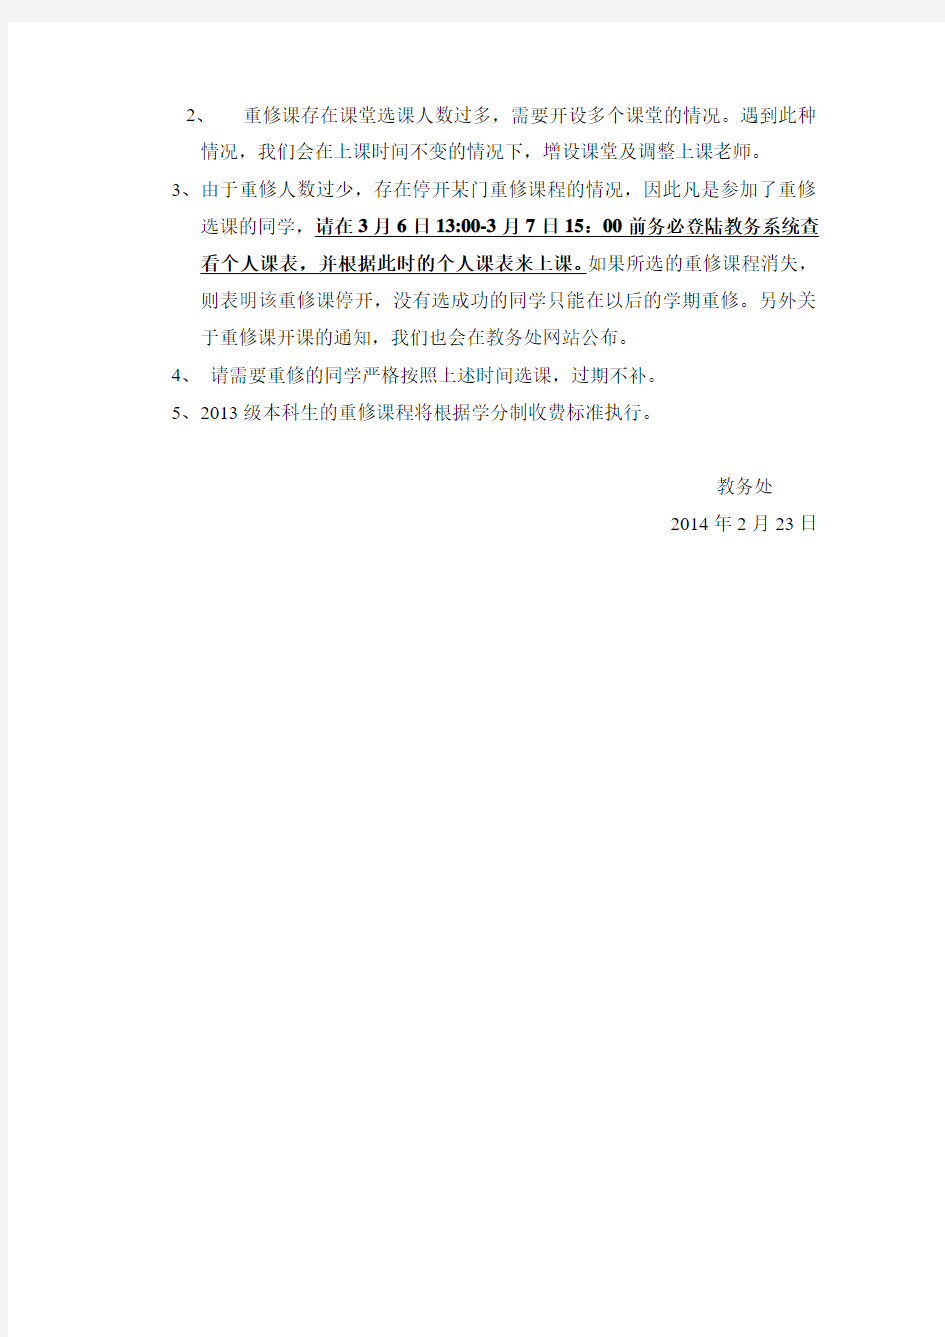 关于武汉科技大学2012级、2013级本科学生网上选重修课程的通知